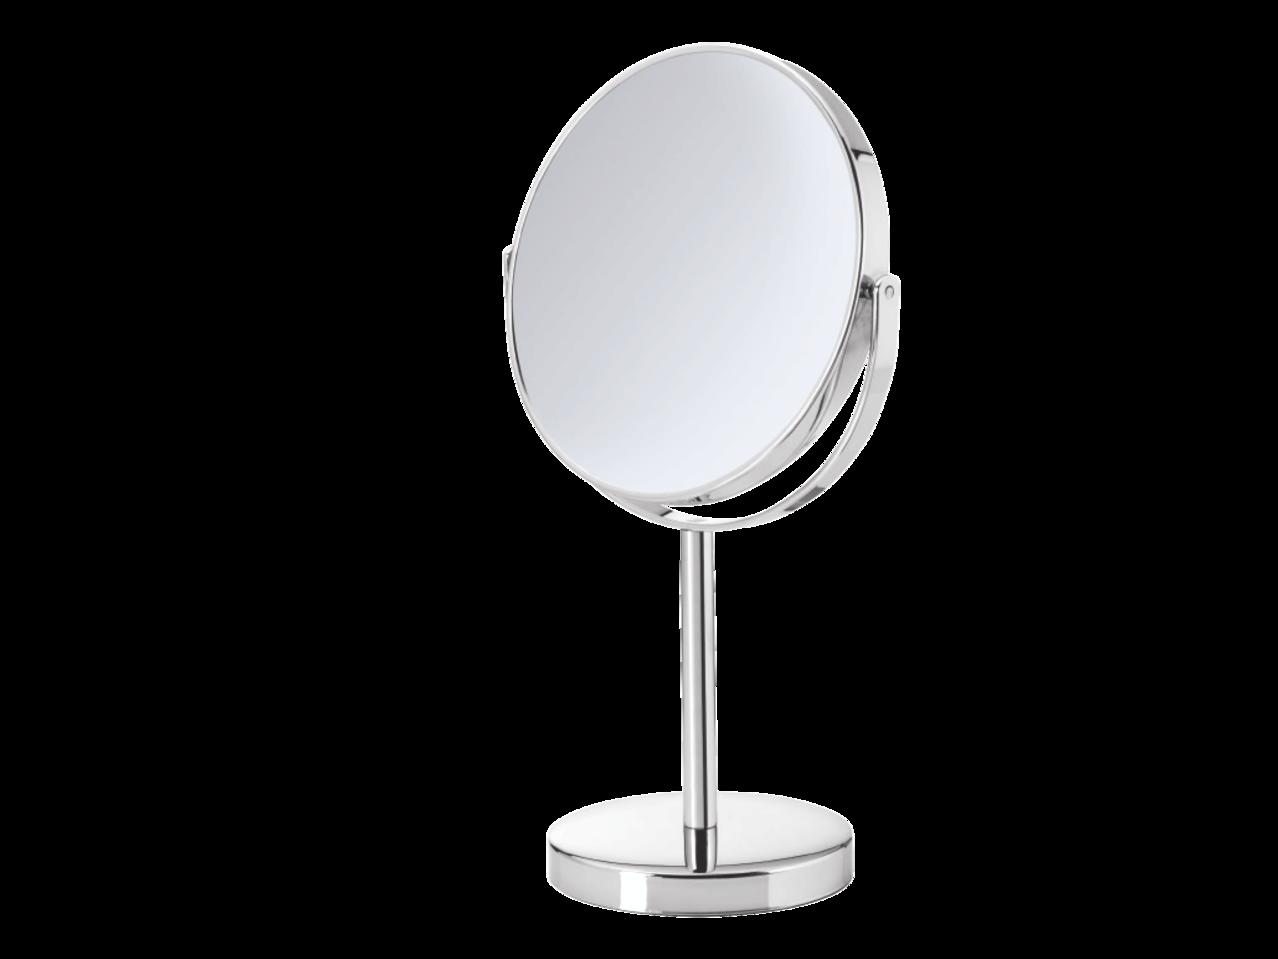 MIOMARE Cosmetic Mirror